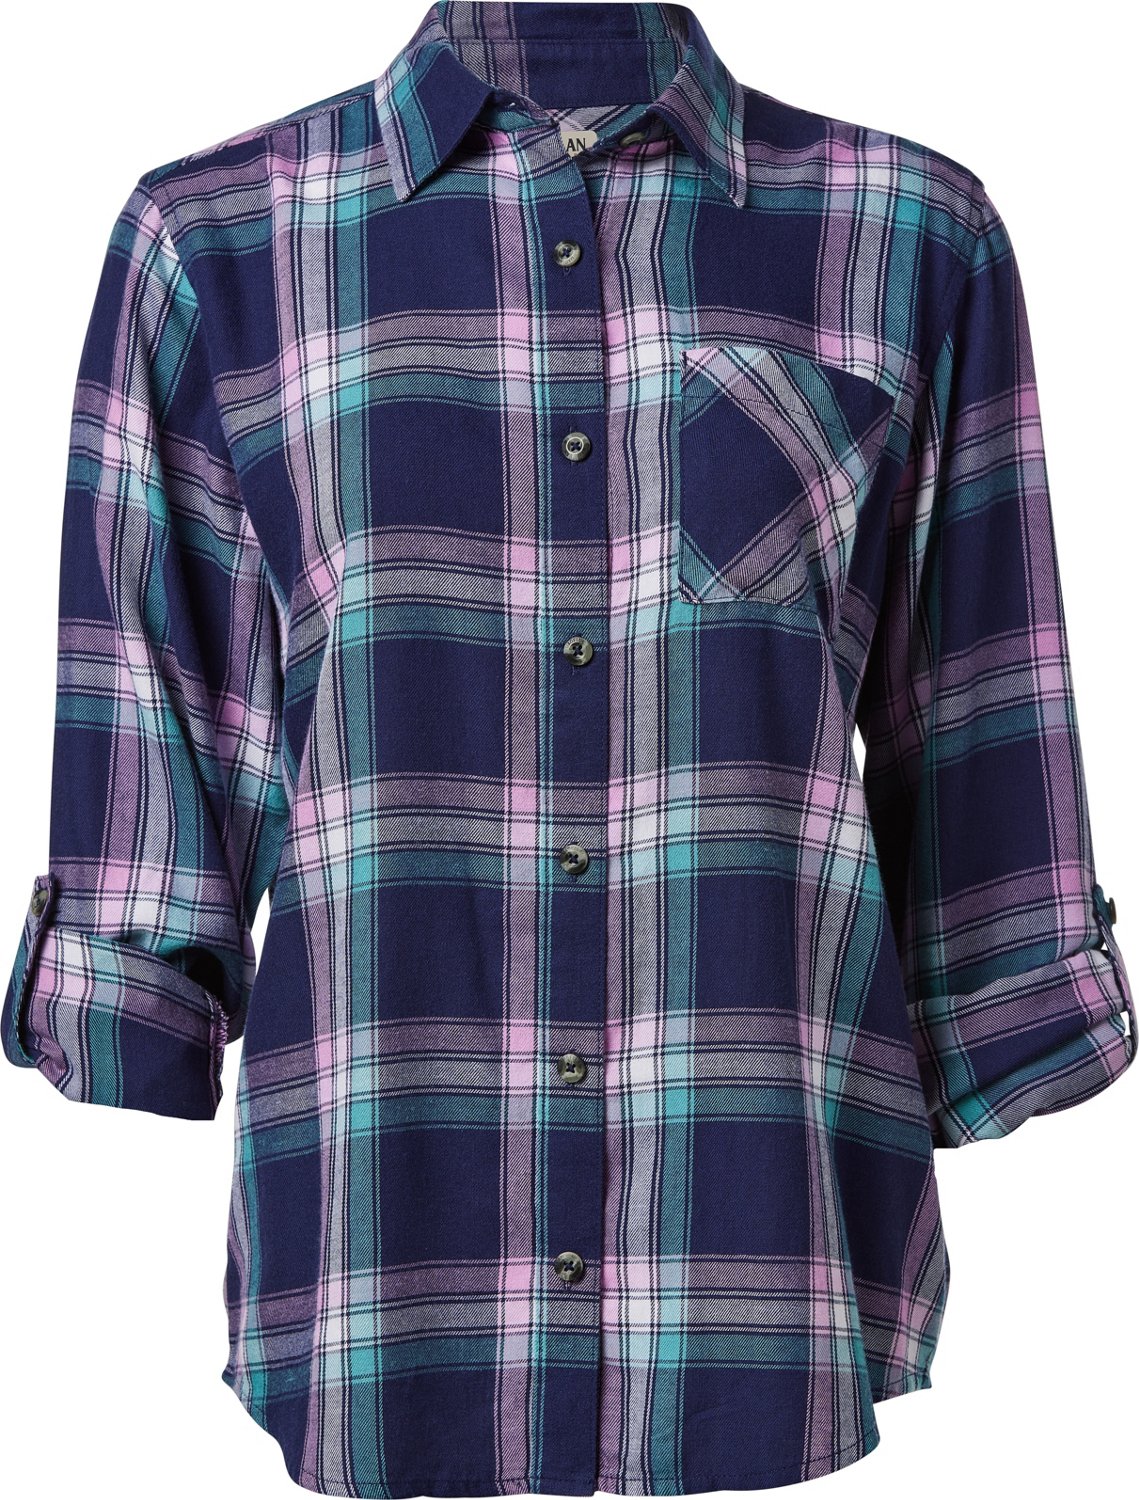 Magellan Outdoors Women's Willow Creek Flannel Shirt | Academy